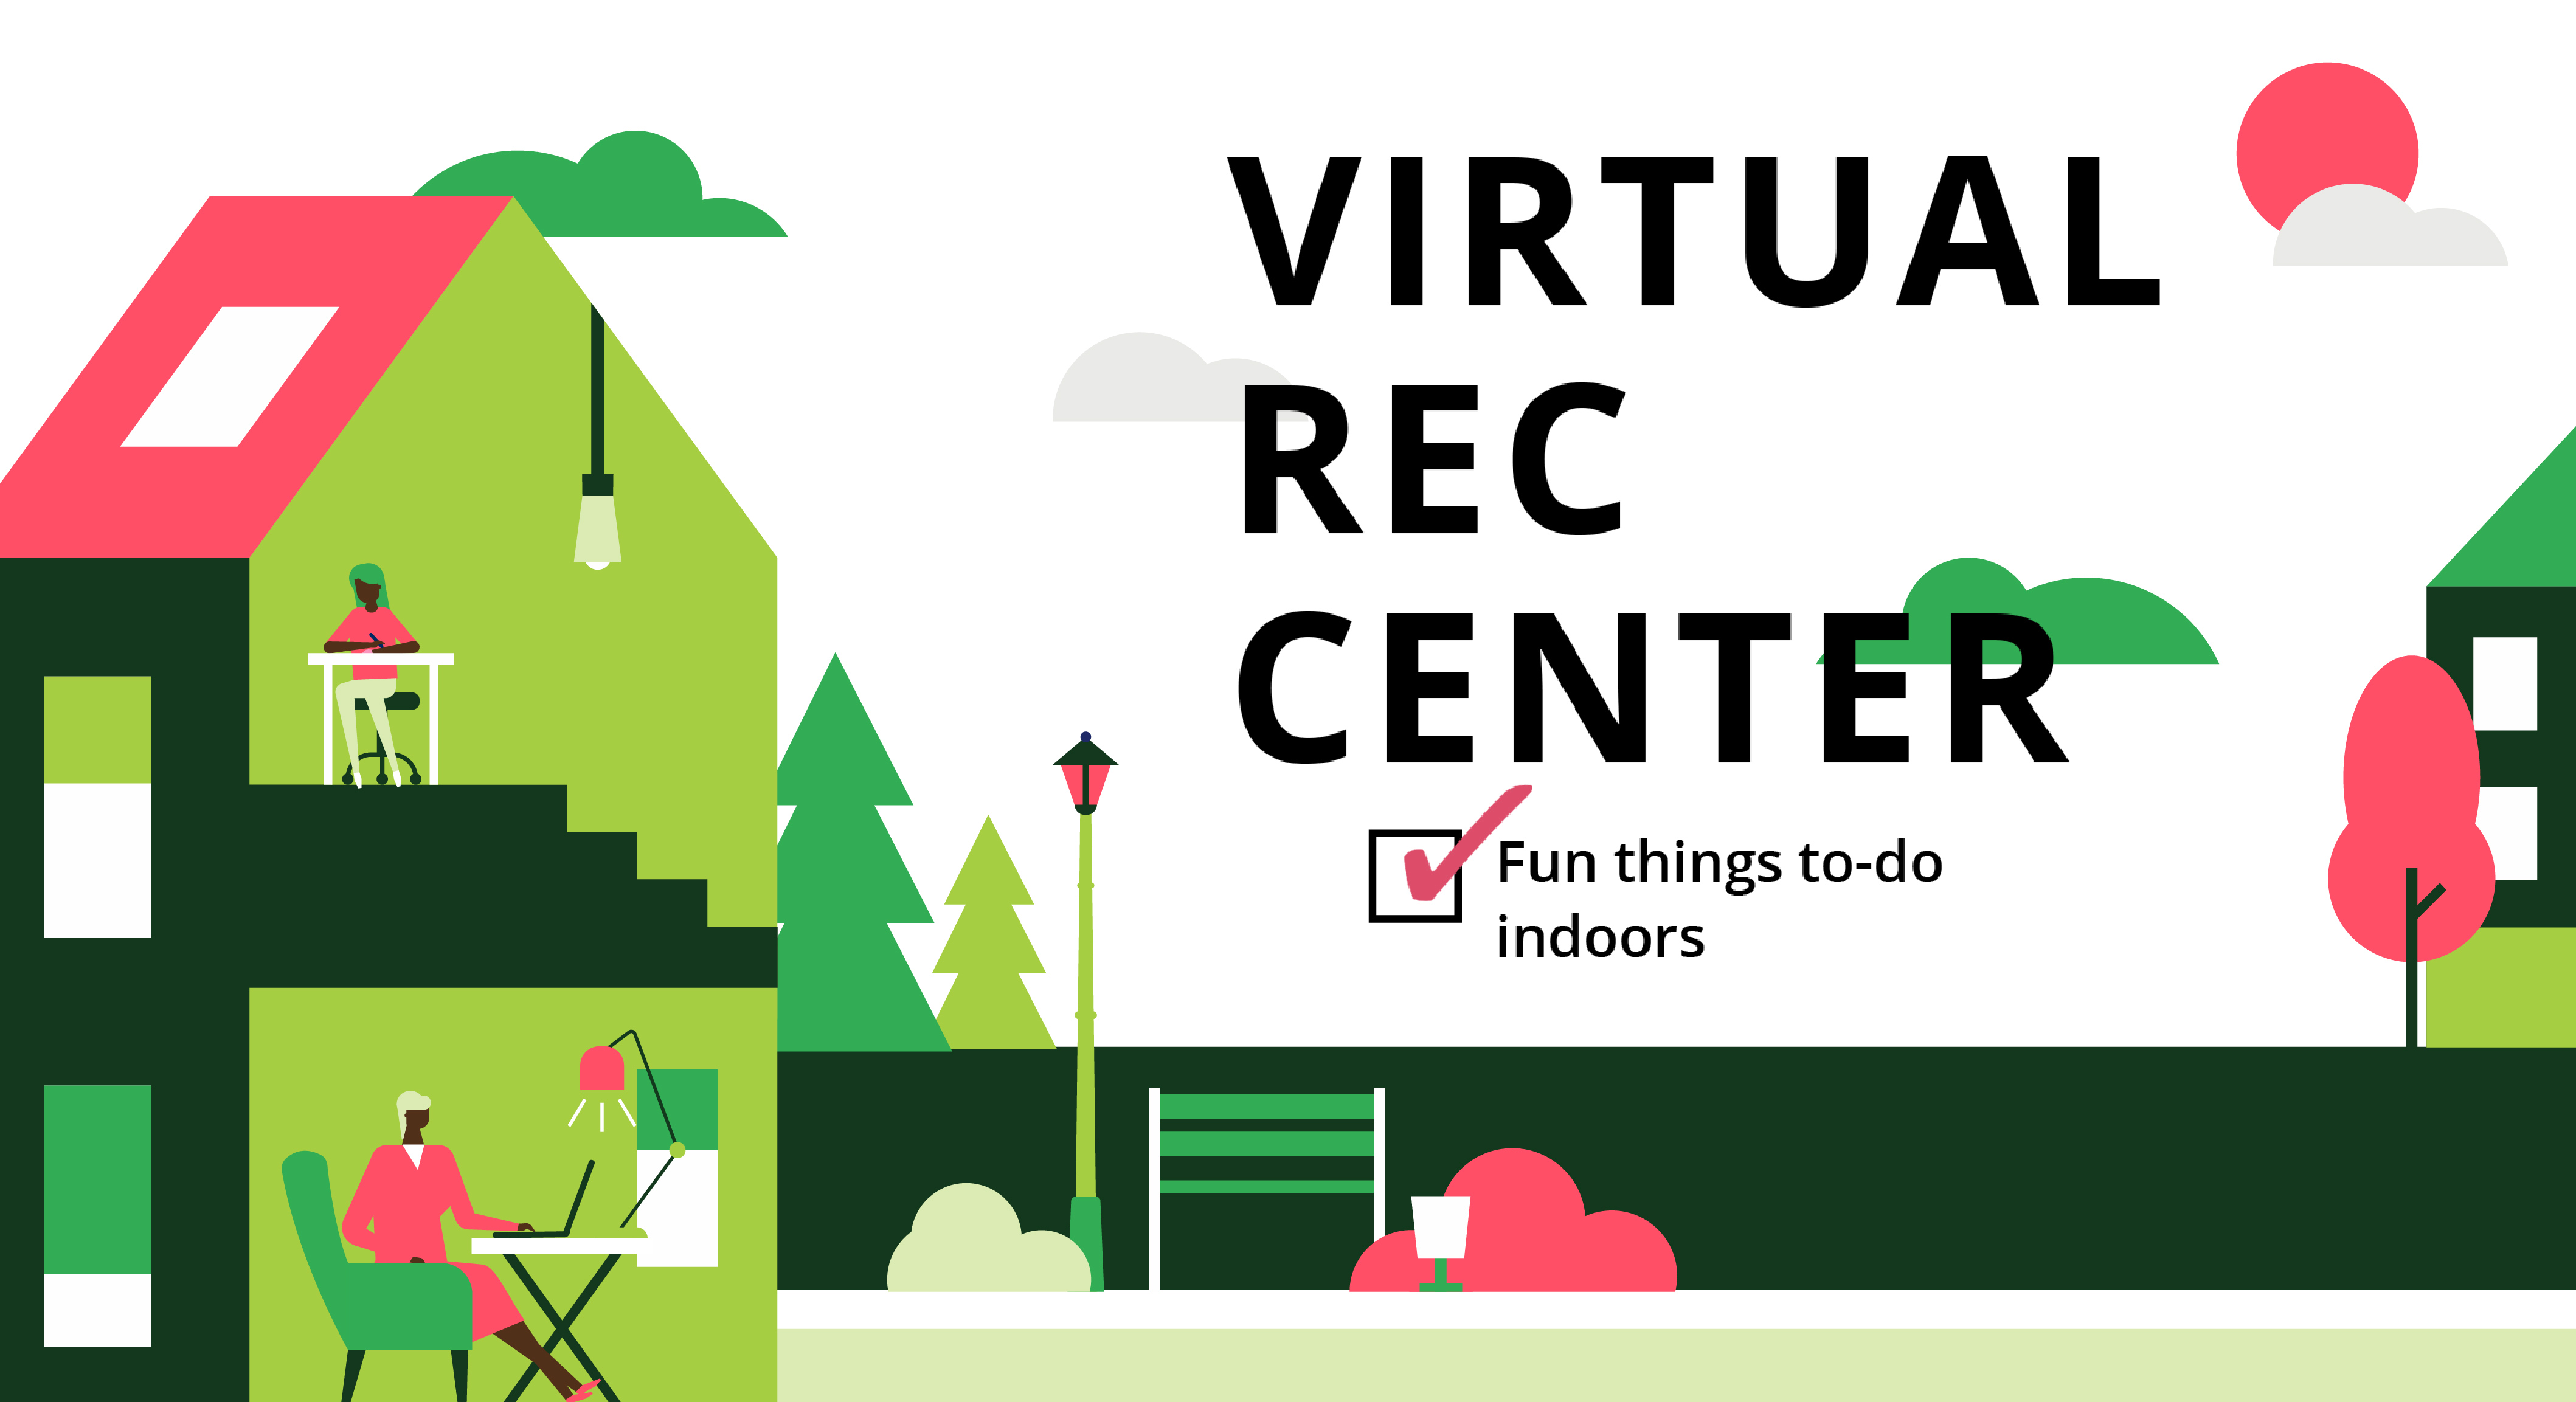 Virtual Rec